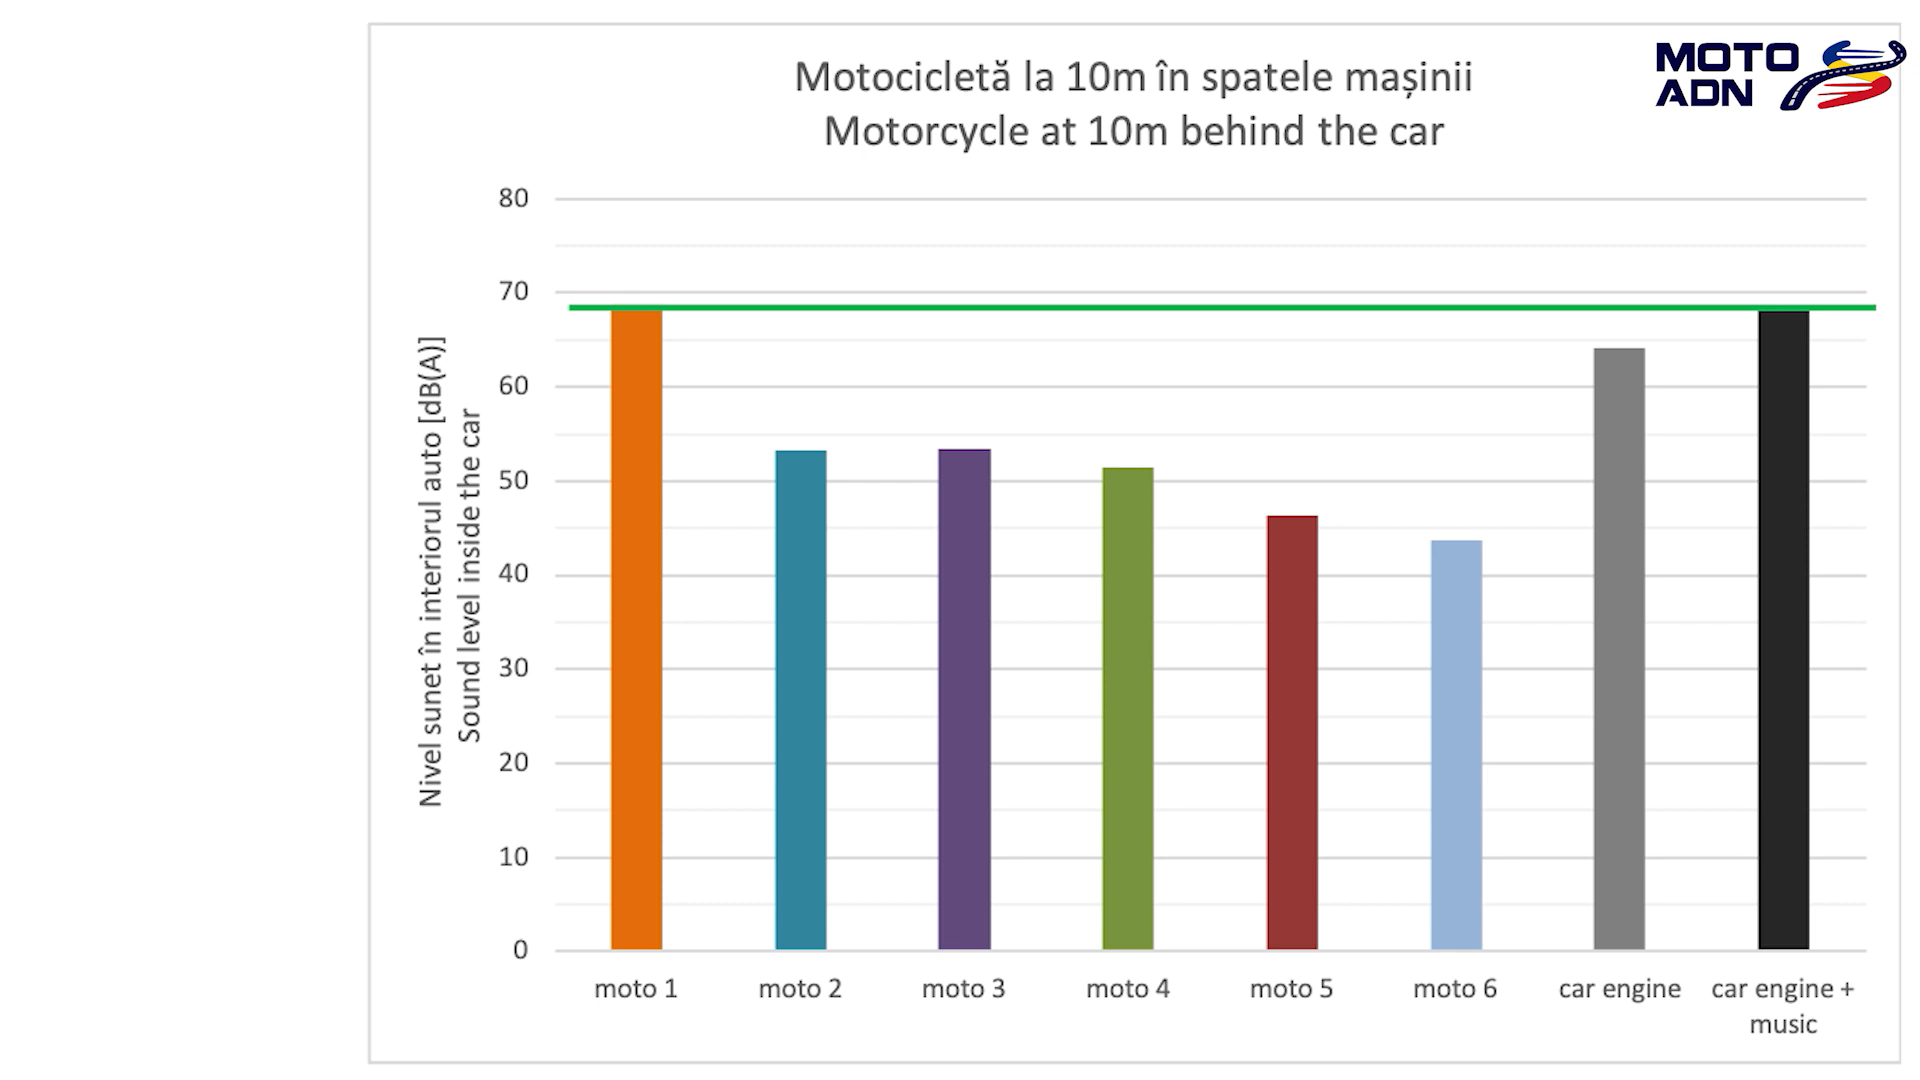 最吵的摩托車聲浪在車內測得約70分貝，而汽車引擎、音響發出的聲音也同為70分貝，兩者幾乎相同。